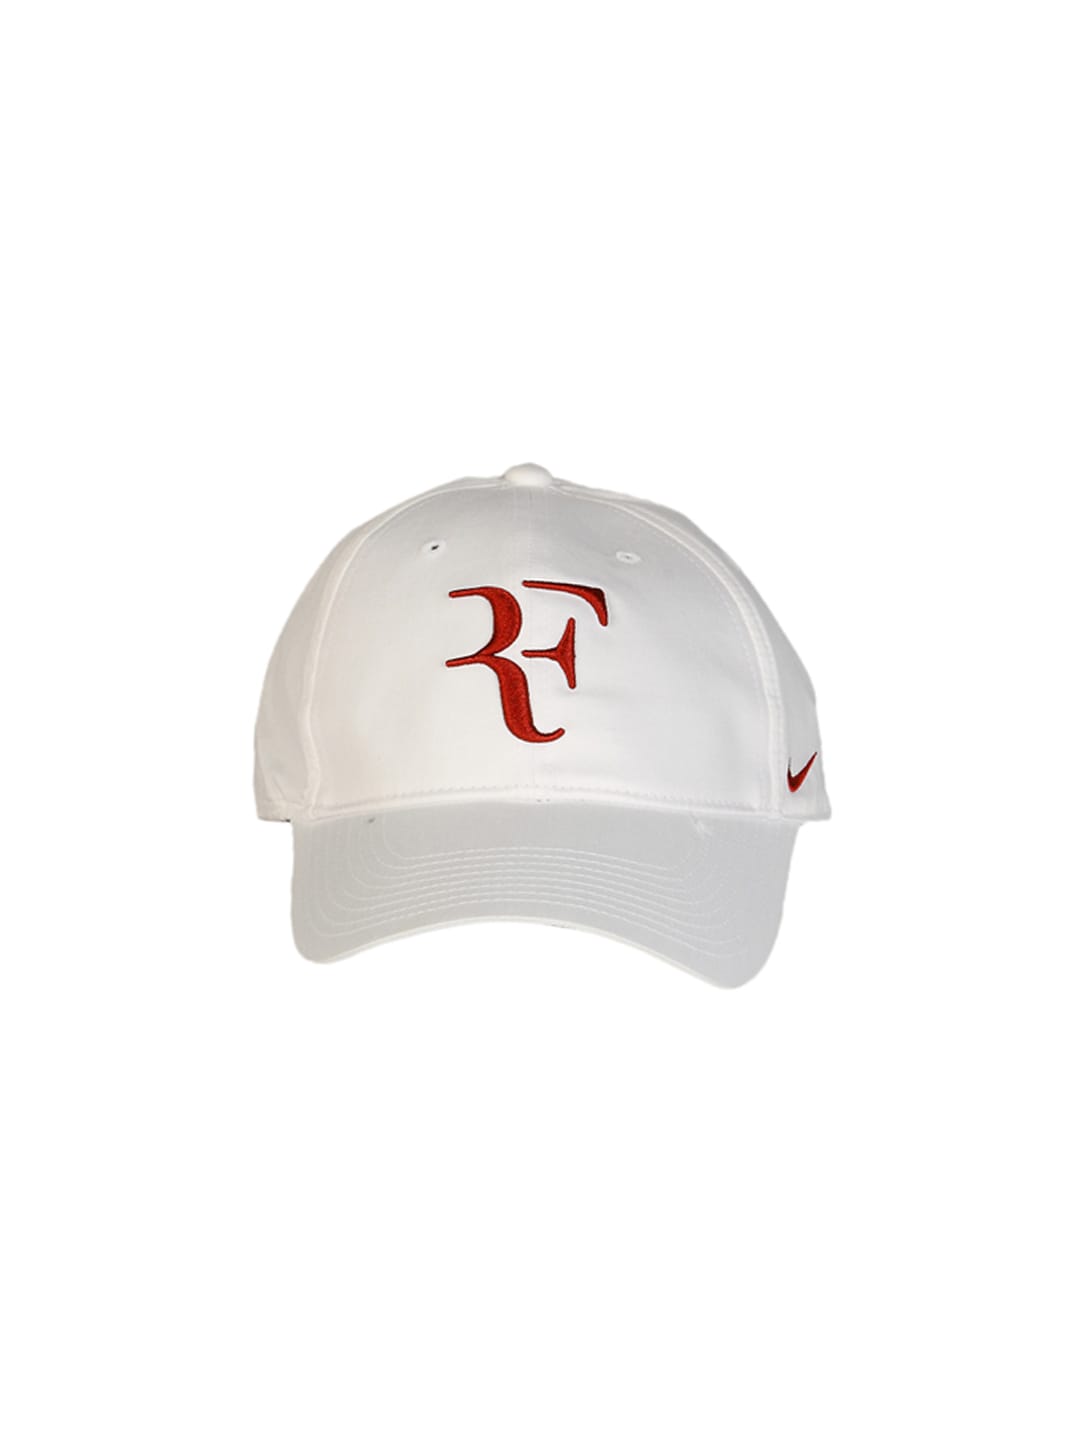 Nike Unisex Rodger Federer White Grey Red Cap